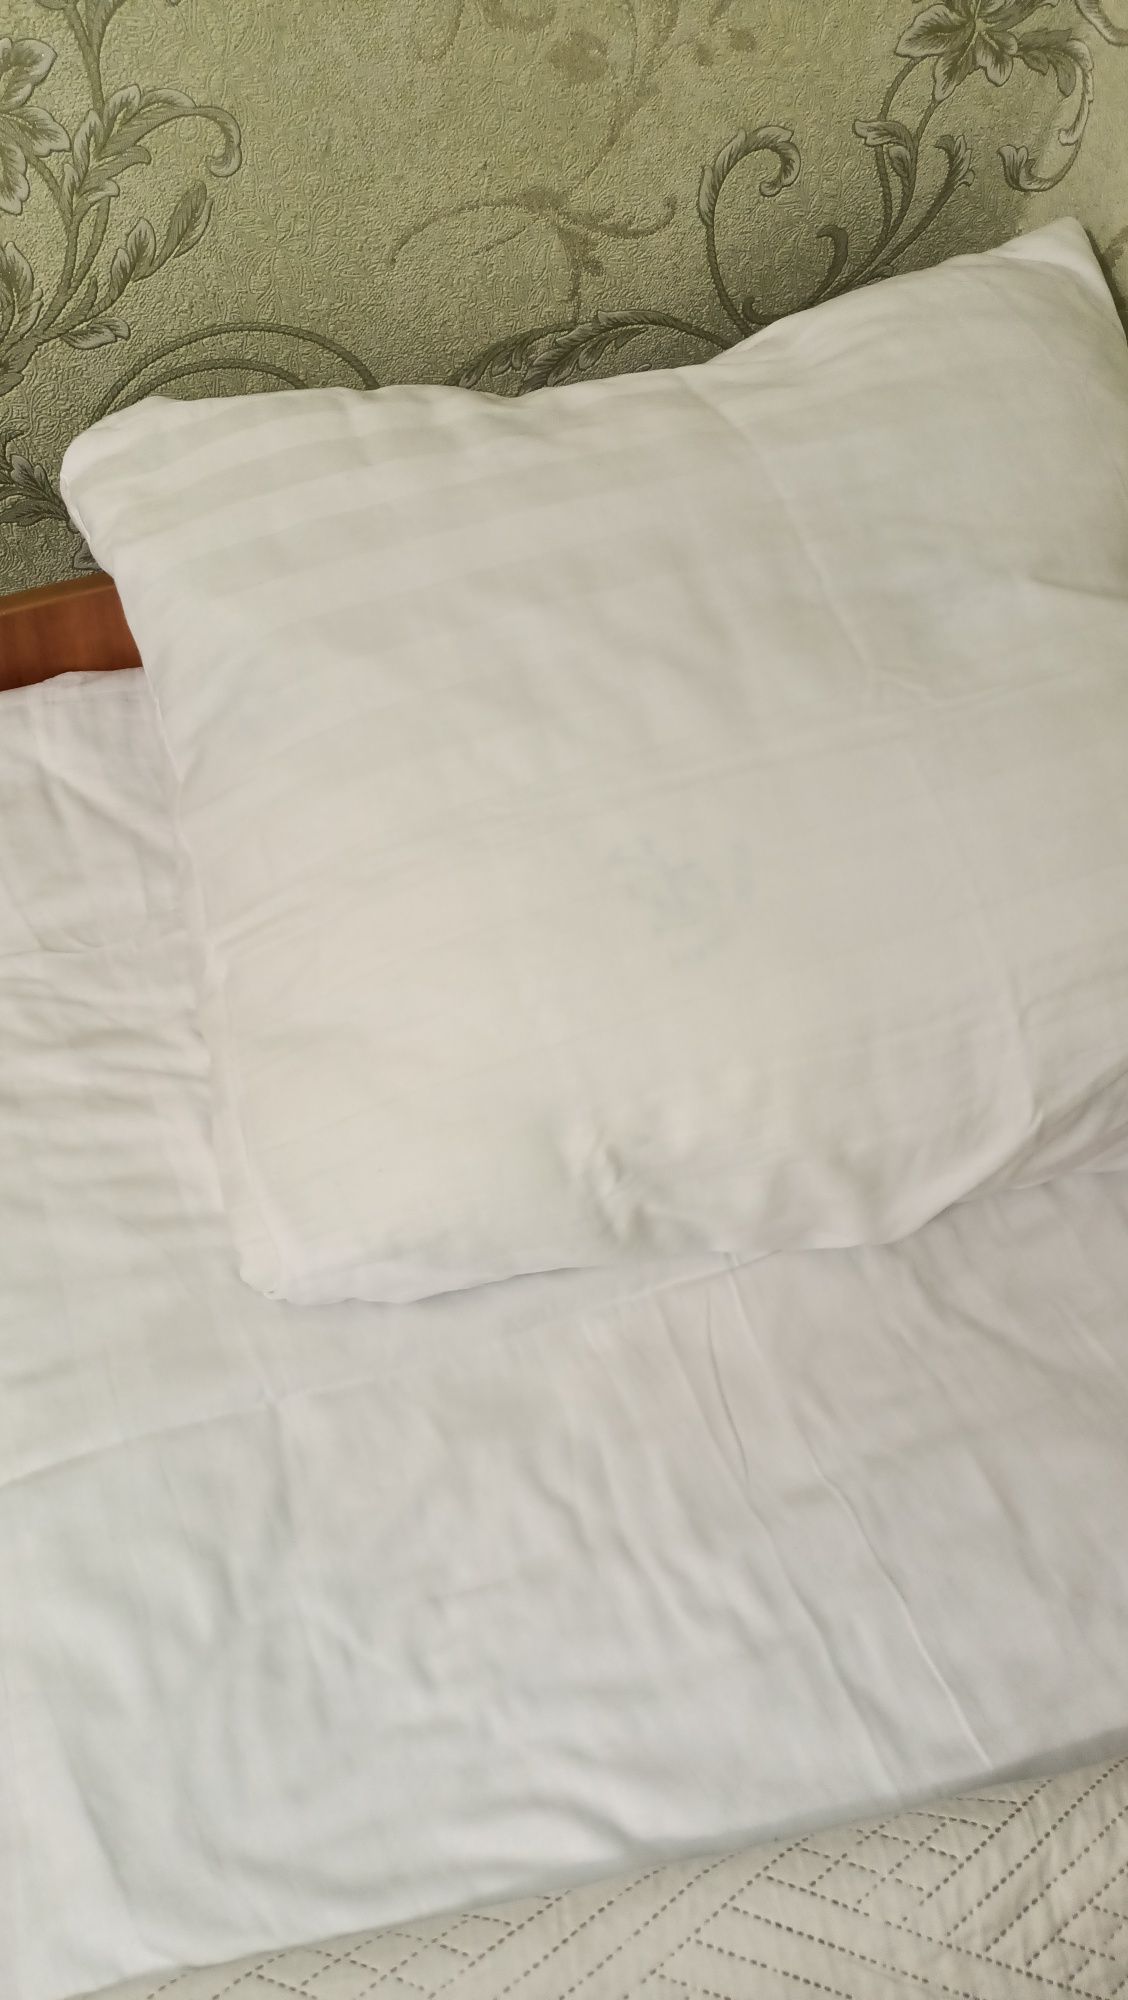 постельное бельё белое ,как в отеле! качество!!